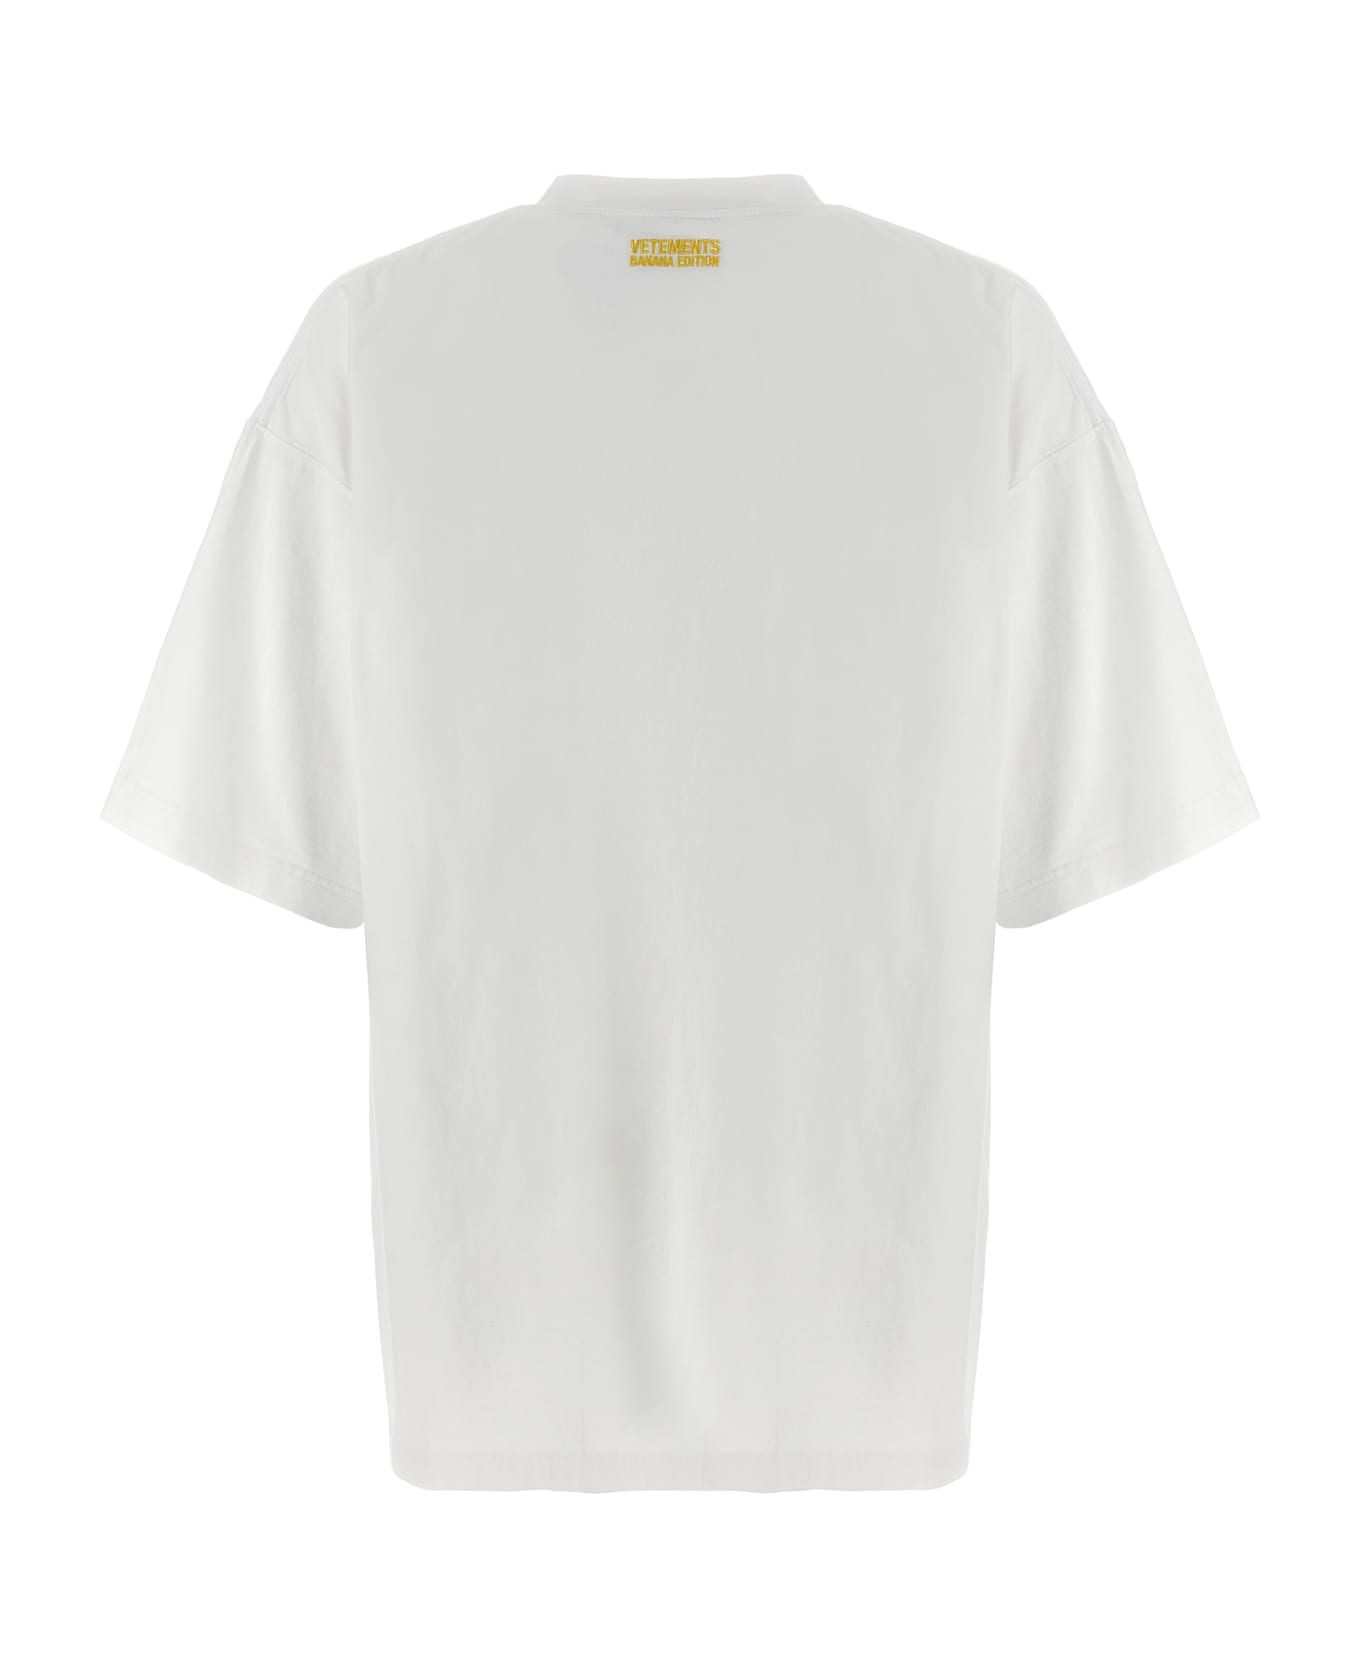 VETEMENTS 'banana' T-shirt - White Tシャツ